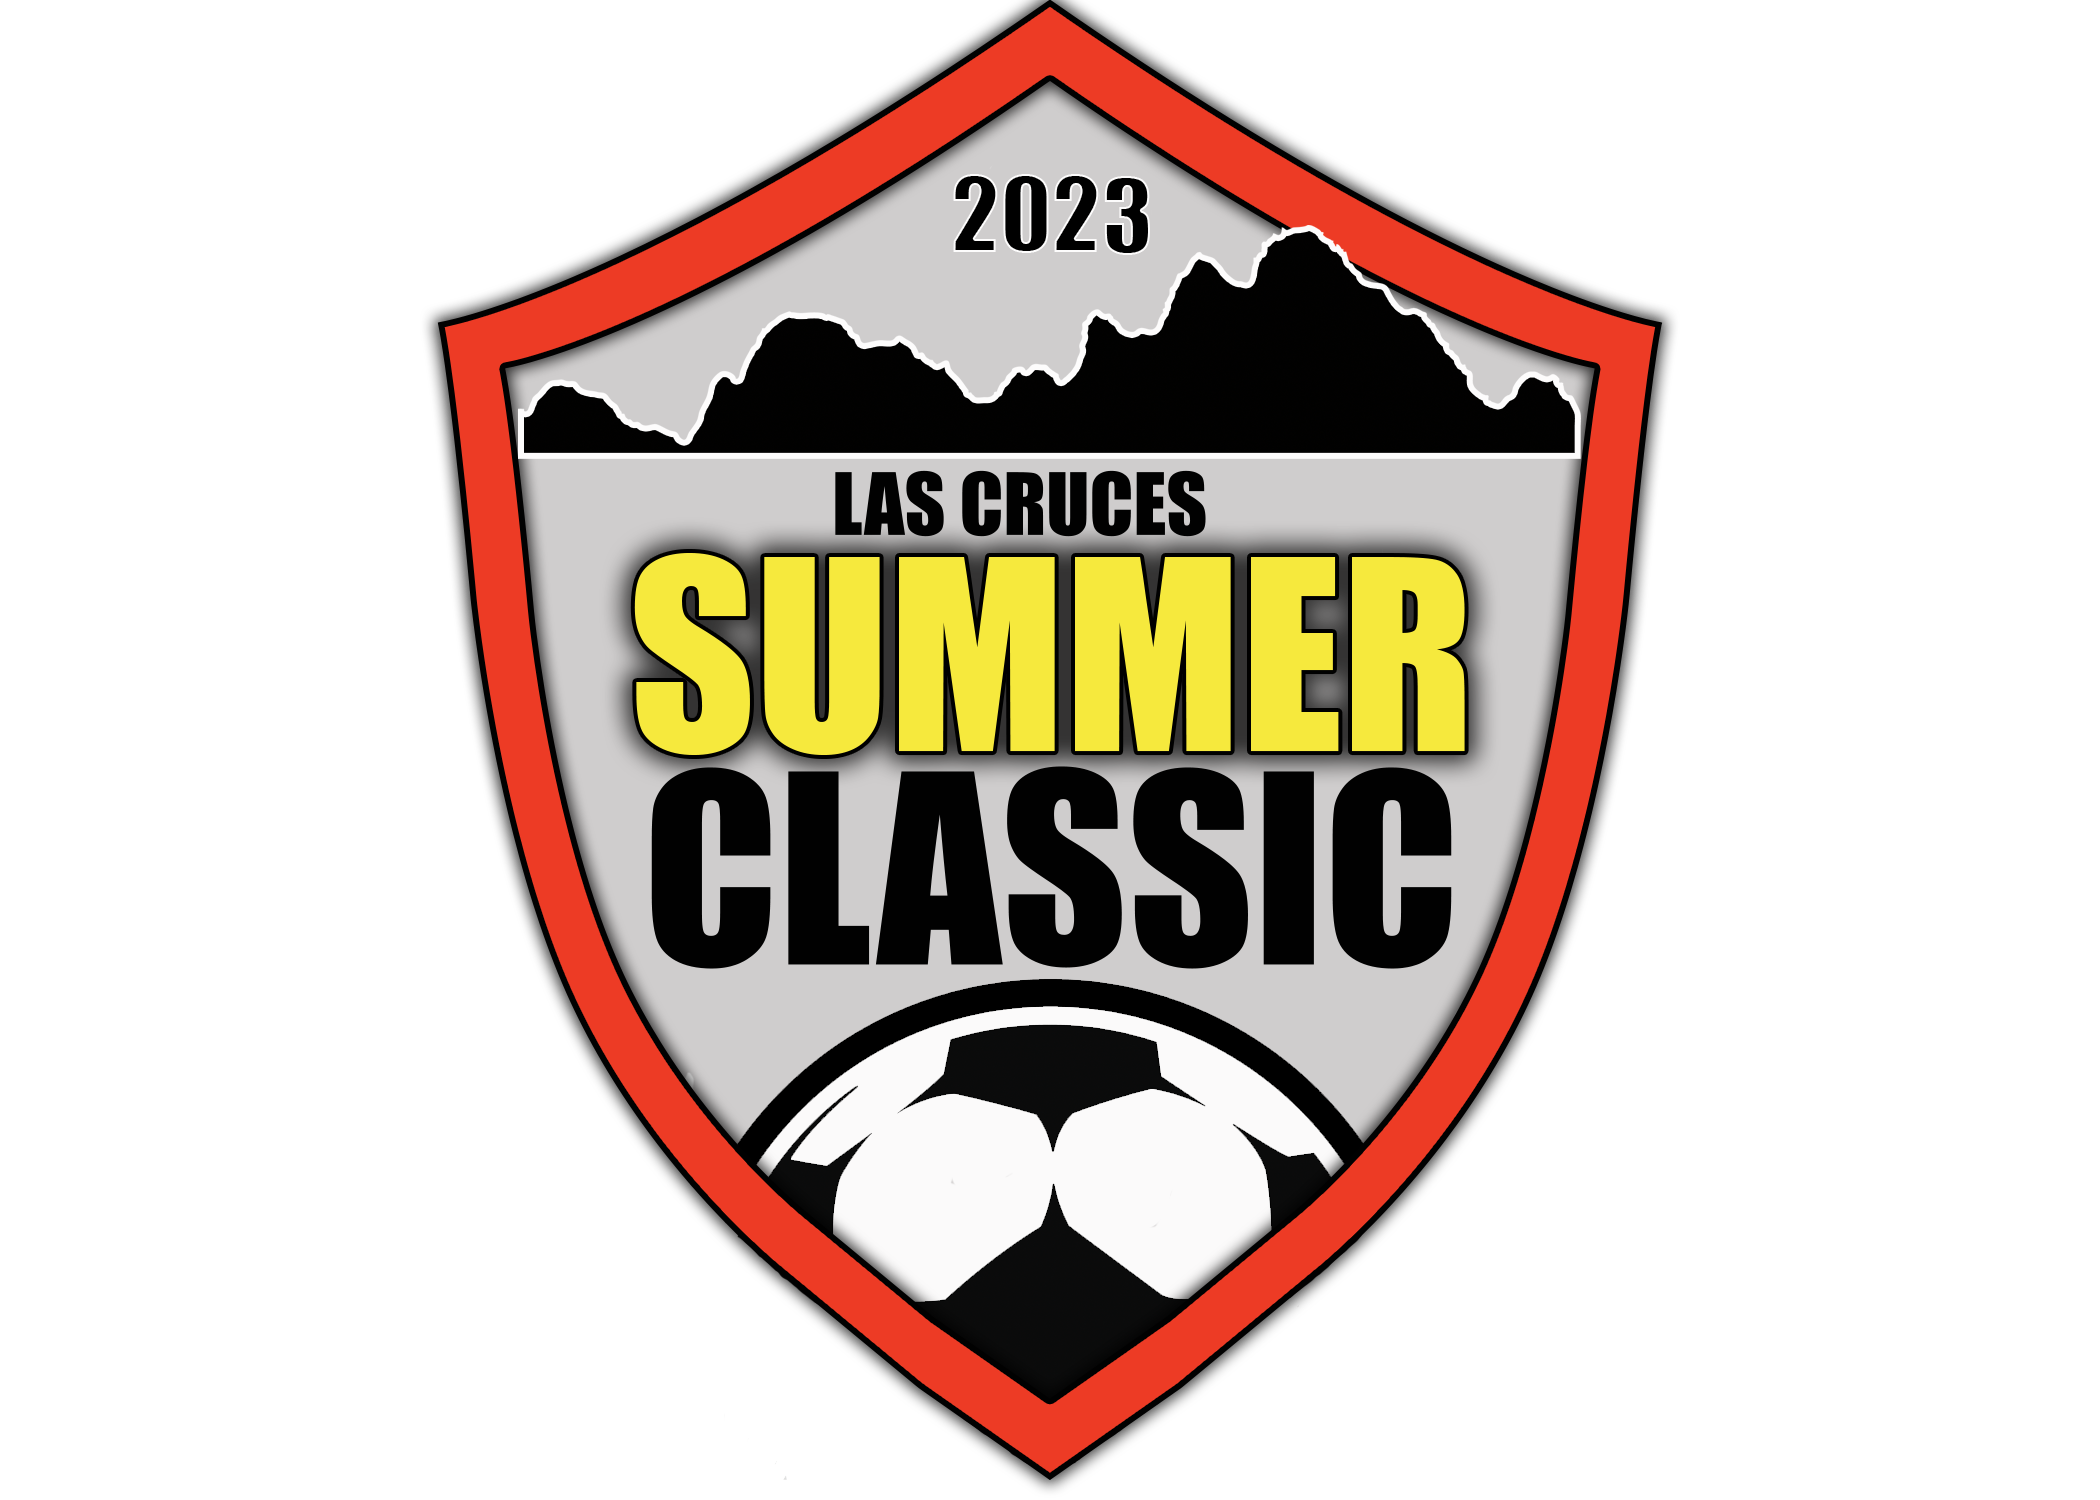 Las Cruces Summer Classic